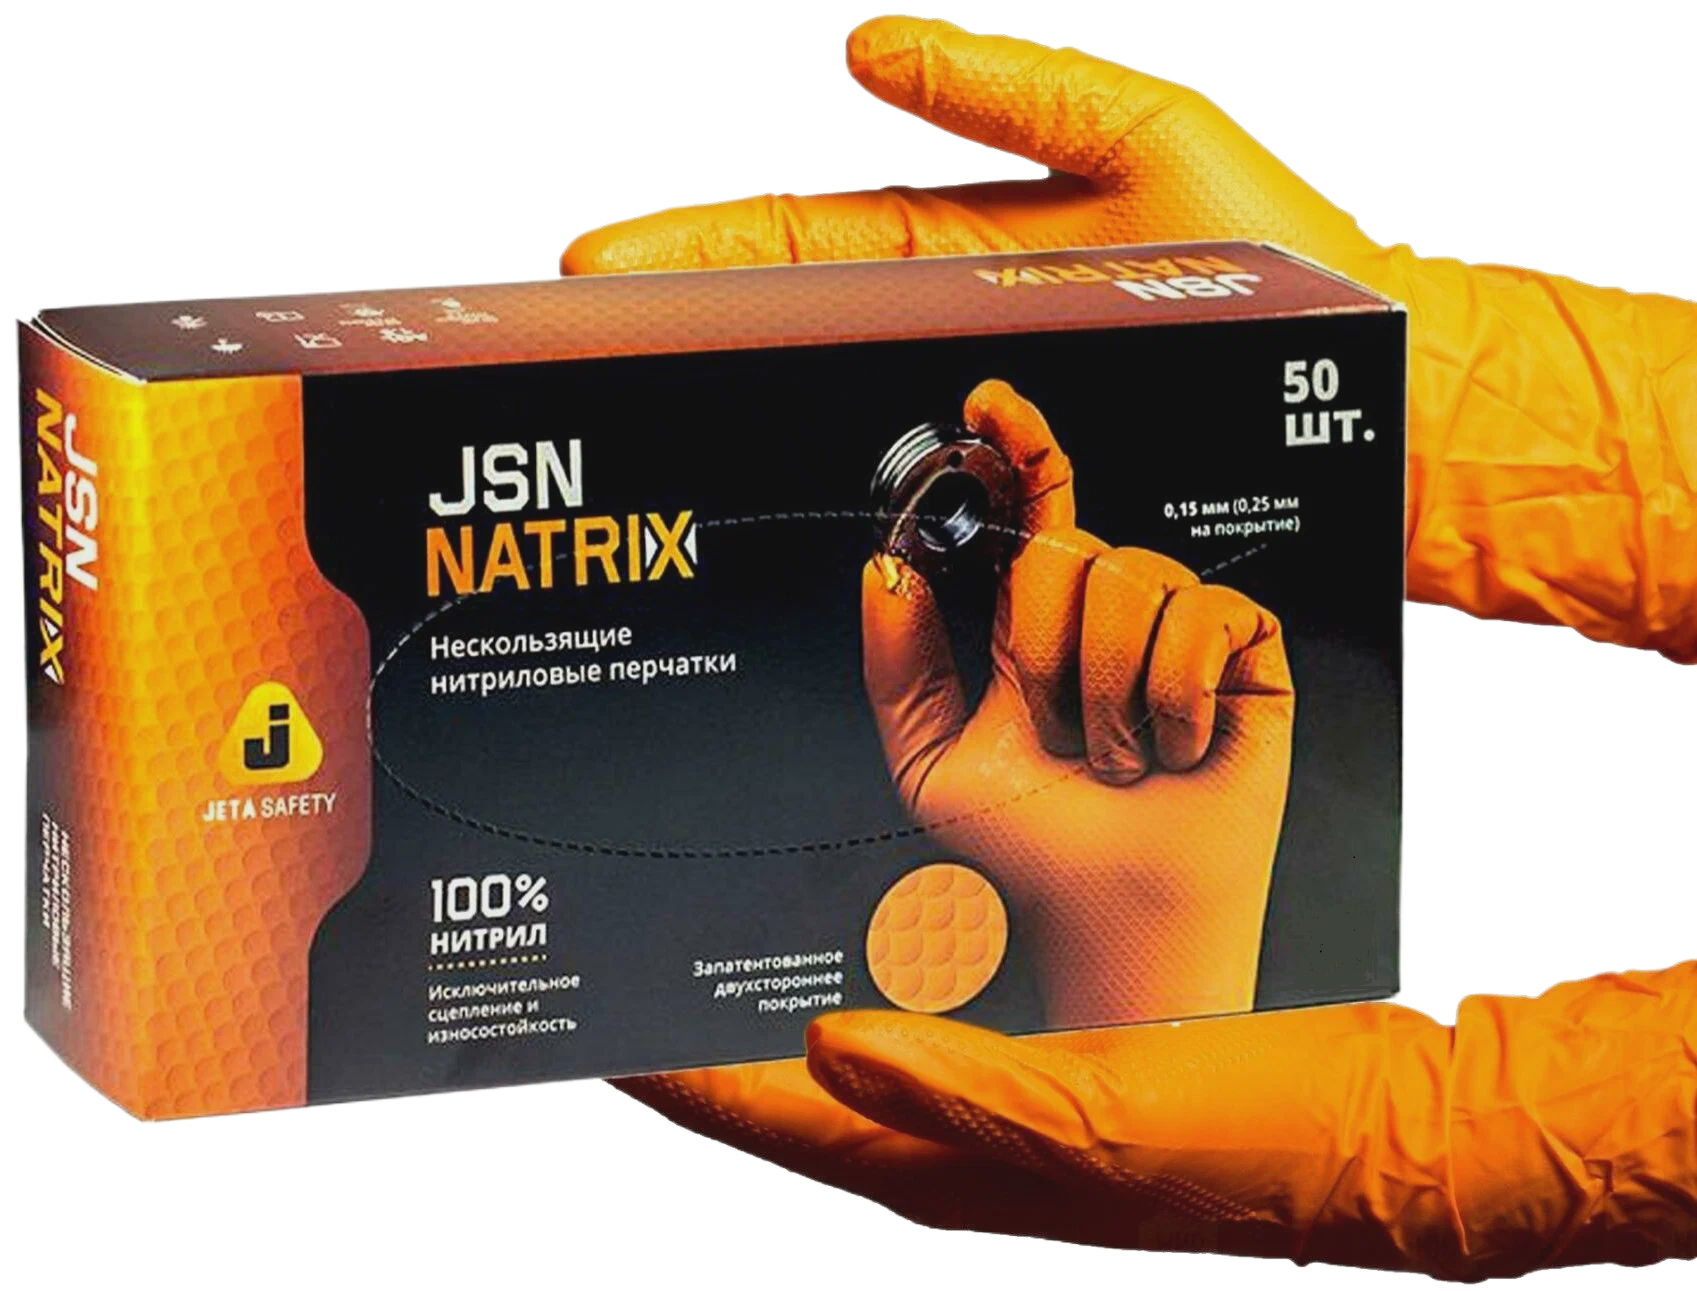 JSN 50 NATRIXMAX OR11/XXL Перч нескользящие одноразовые JETA Safety оранжевые нитриловые размер XXL, 1 шт